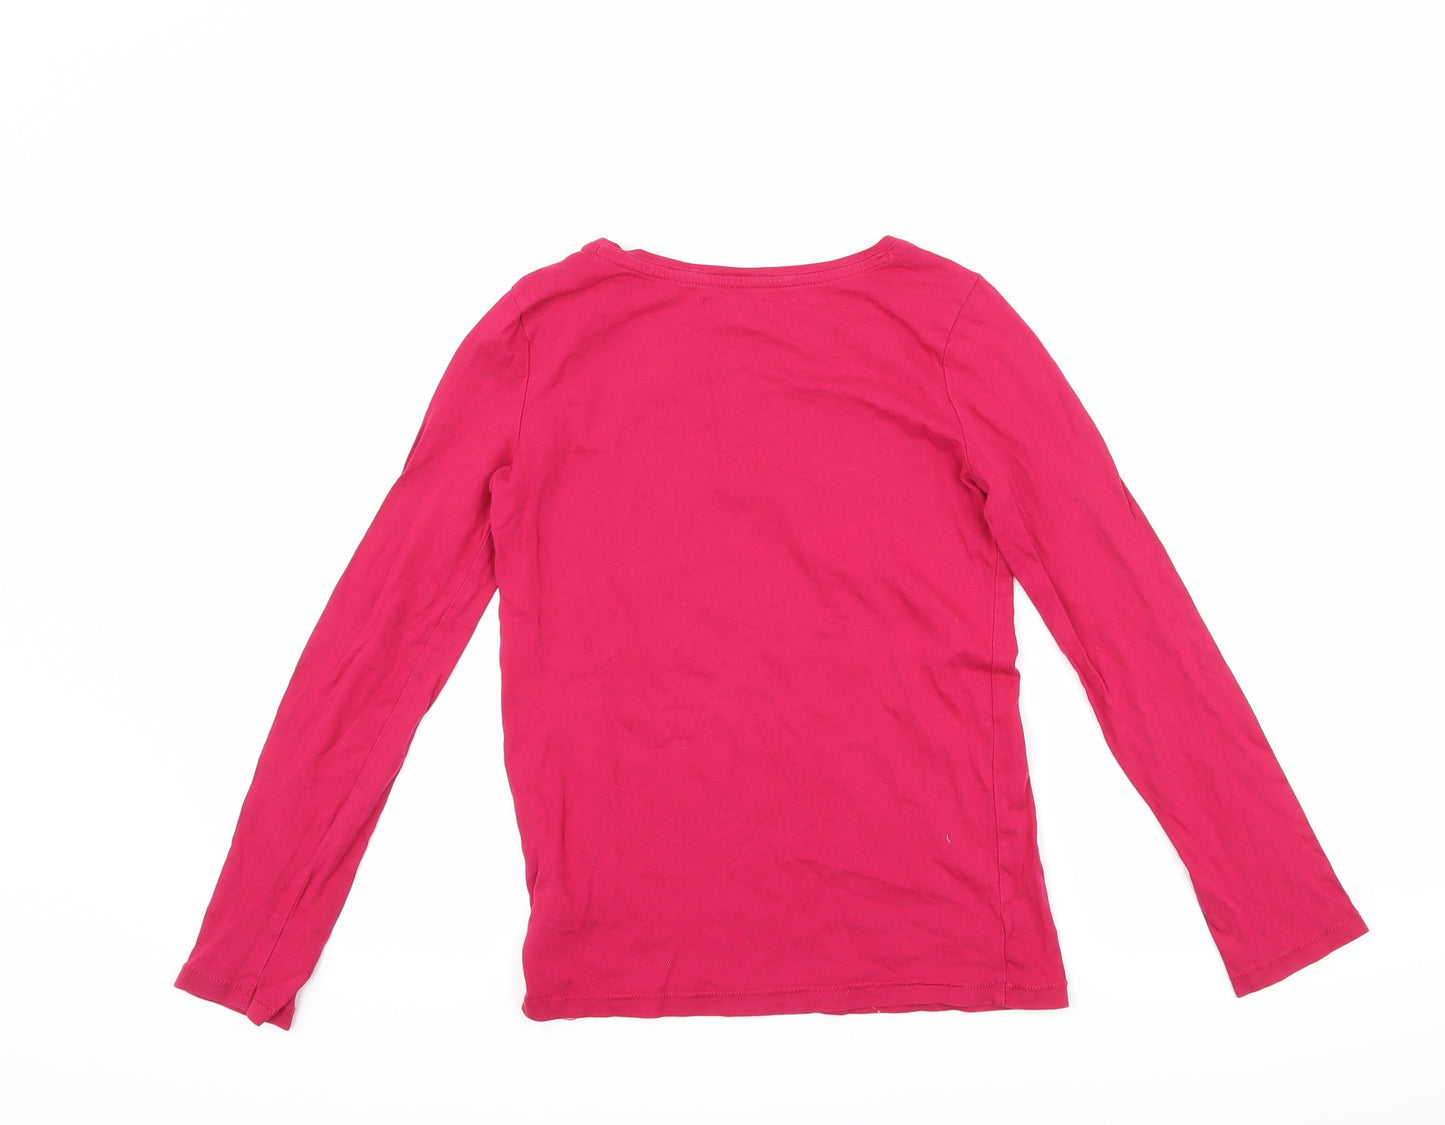 Gap Girls Pink   Basic T-Shirt Size 10-11 Years